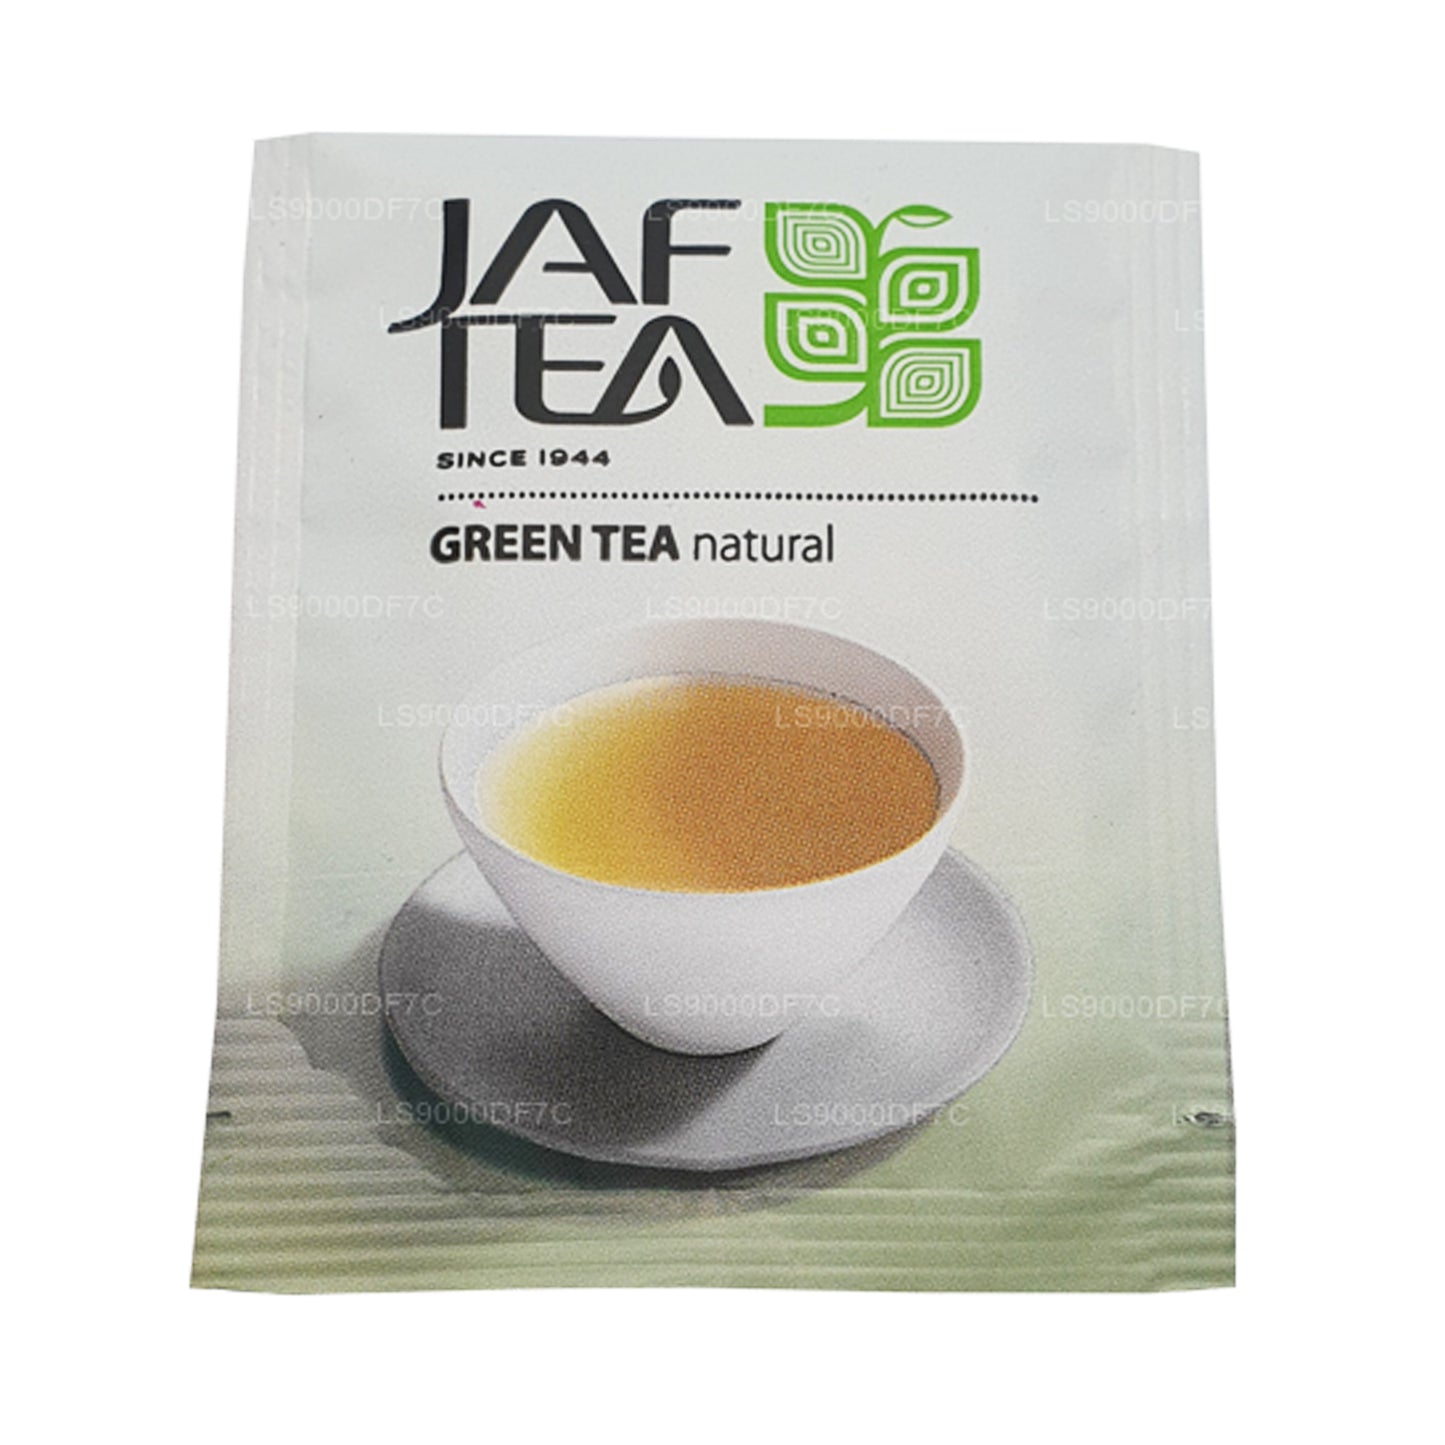 Jaf Tea Pure Teas und Aufgüsse (145 g) 80 Teebeutel